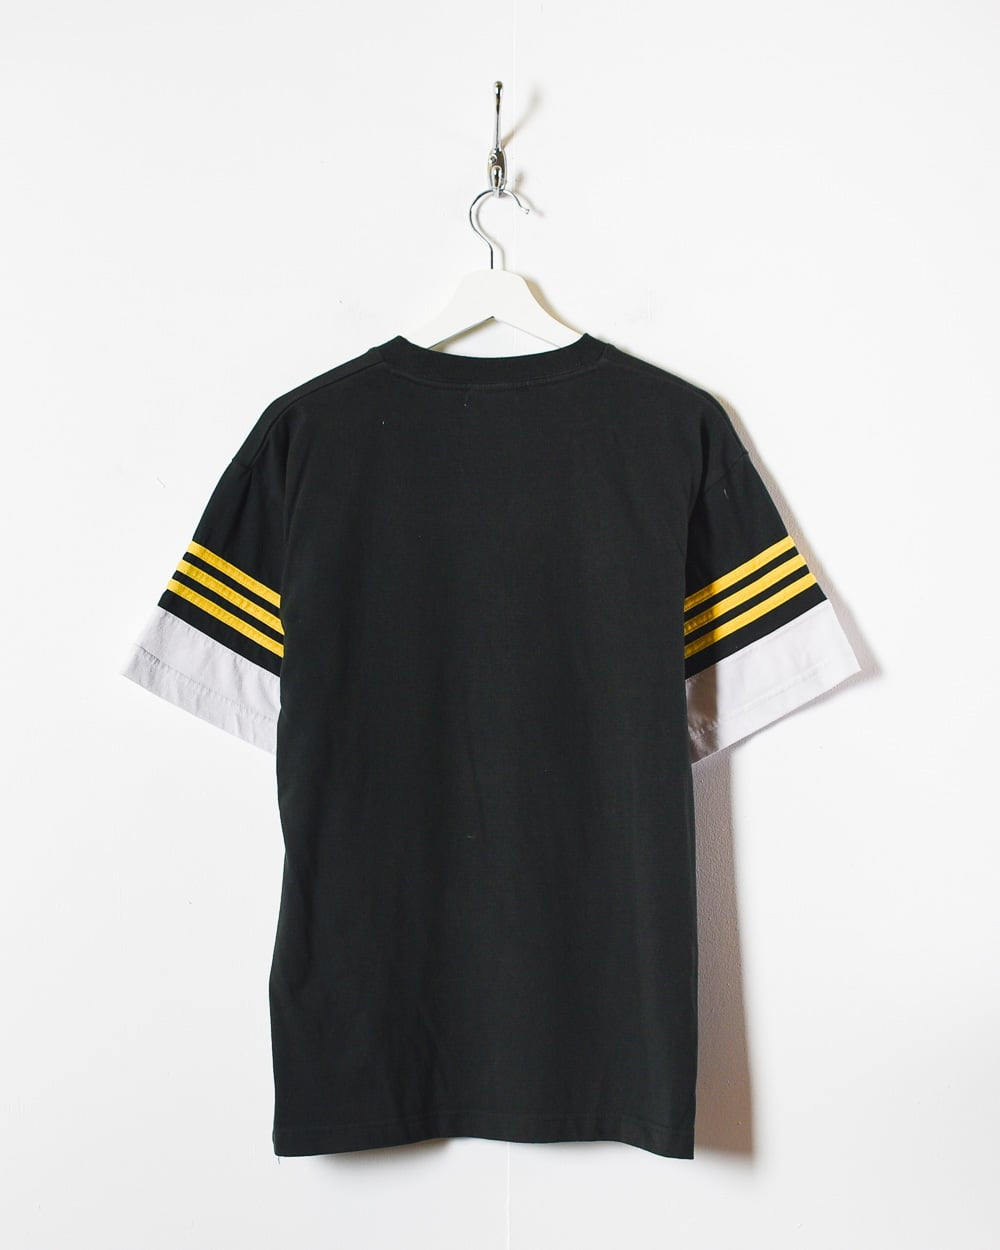 Black Adidas T-Shirt - Small